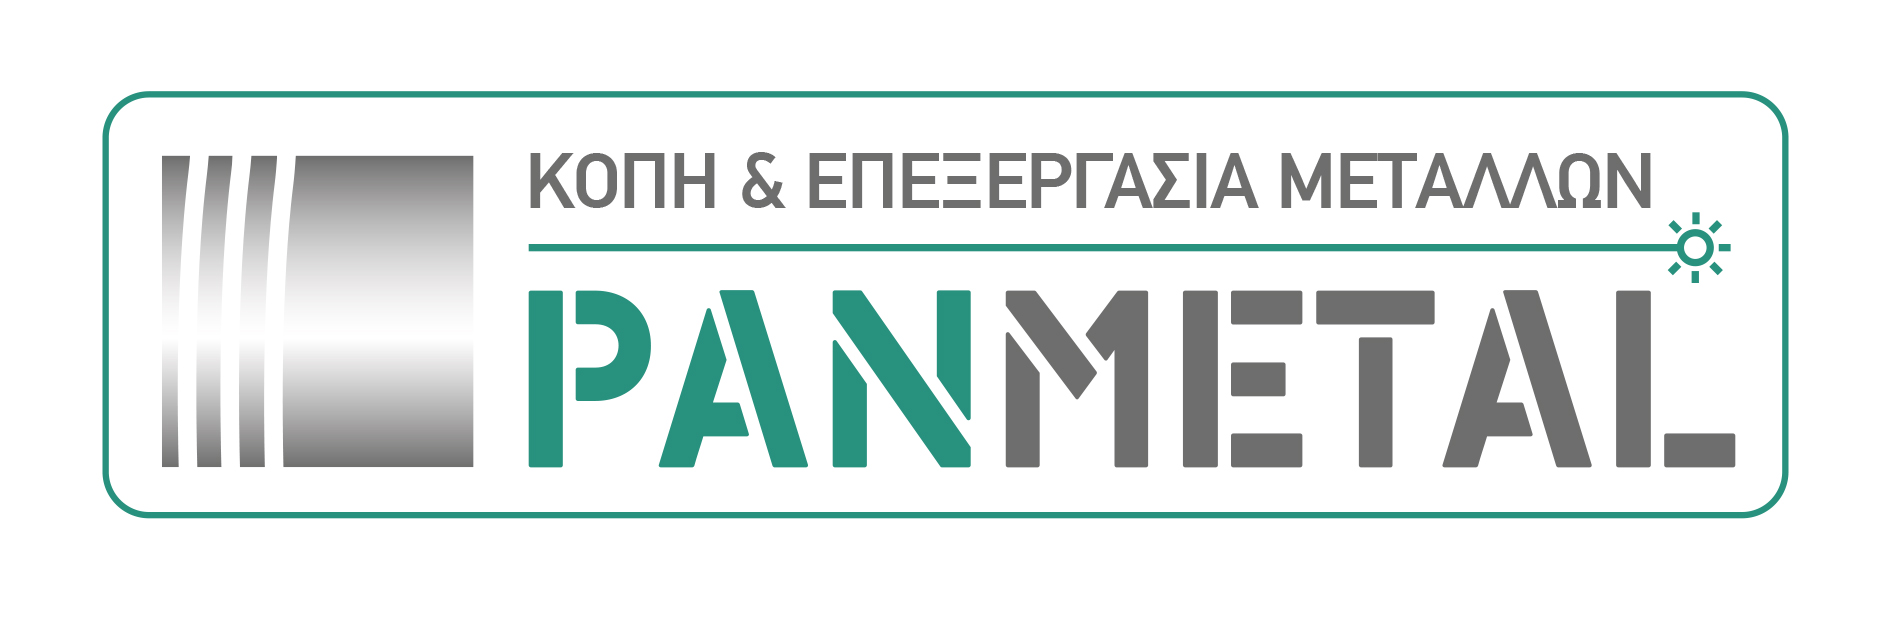 panmetal logo 1.jpg